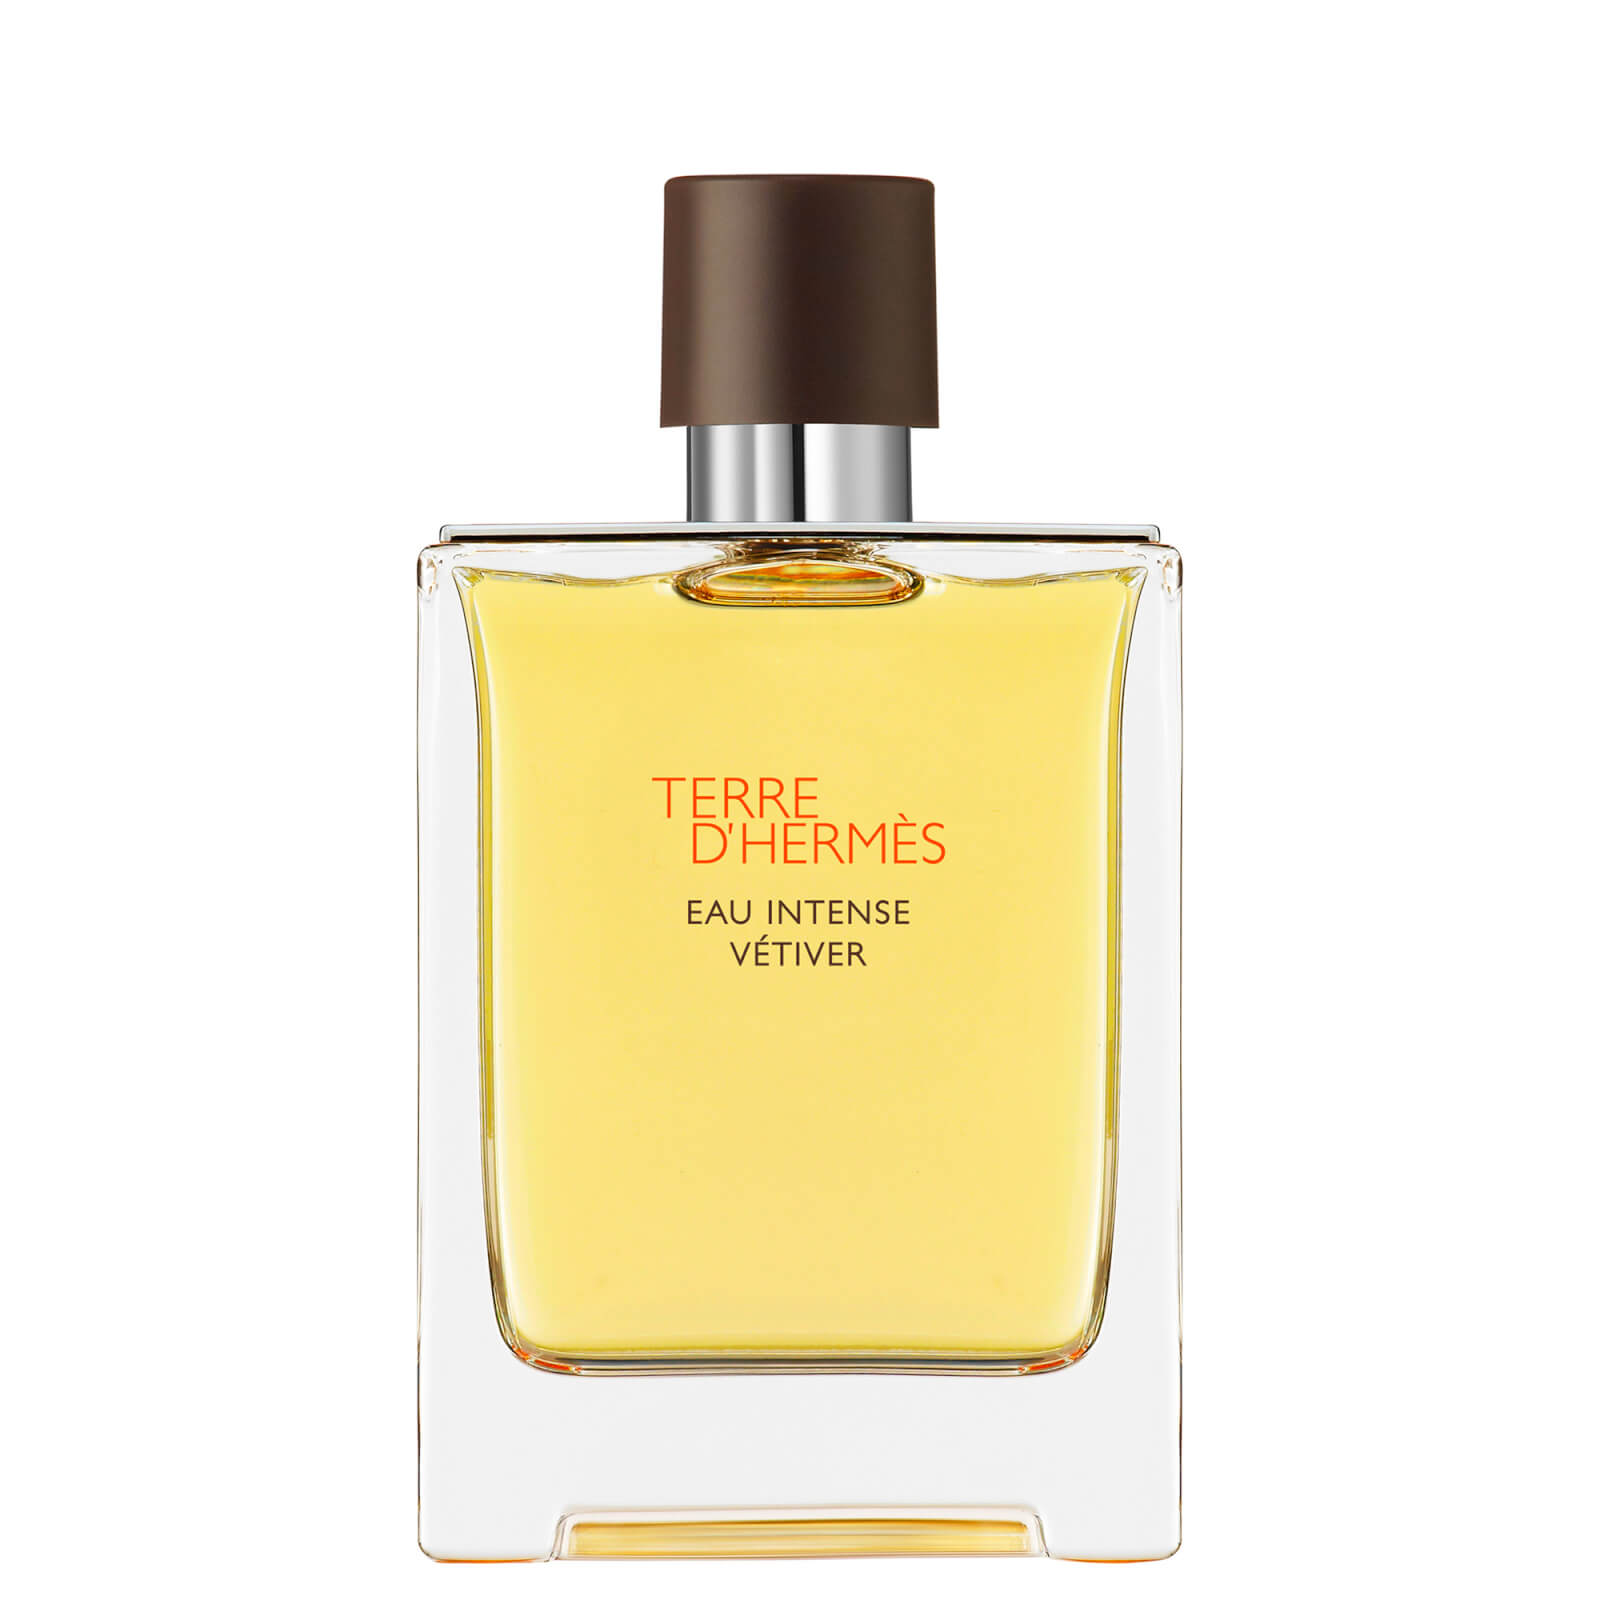 Photos - Women's Fragrance Hermes Hermès Terre d'Hermès Eau Intense Vétiver Eau de Parfum Natural Spray 100m 